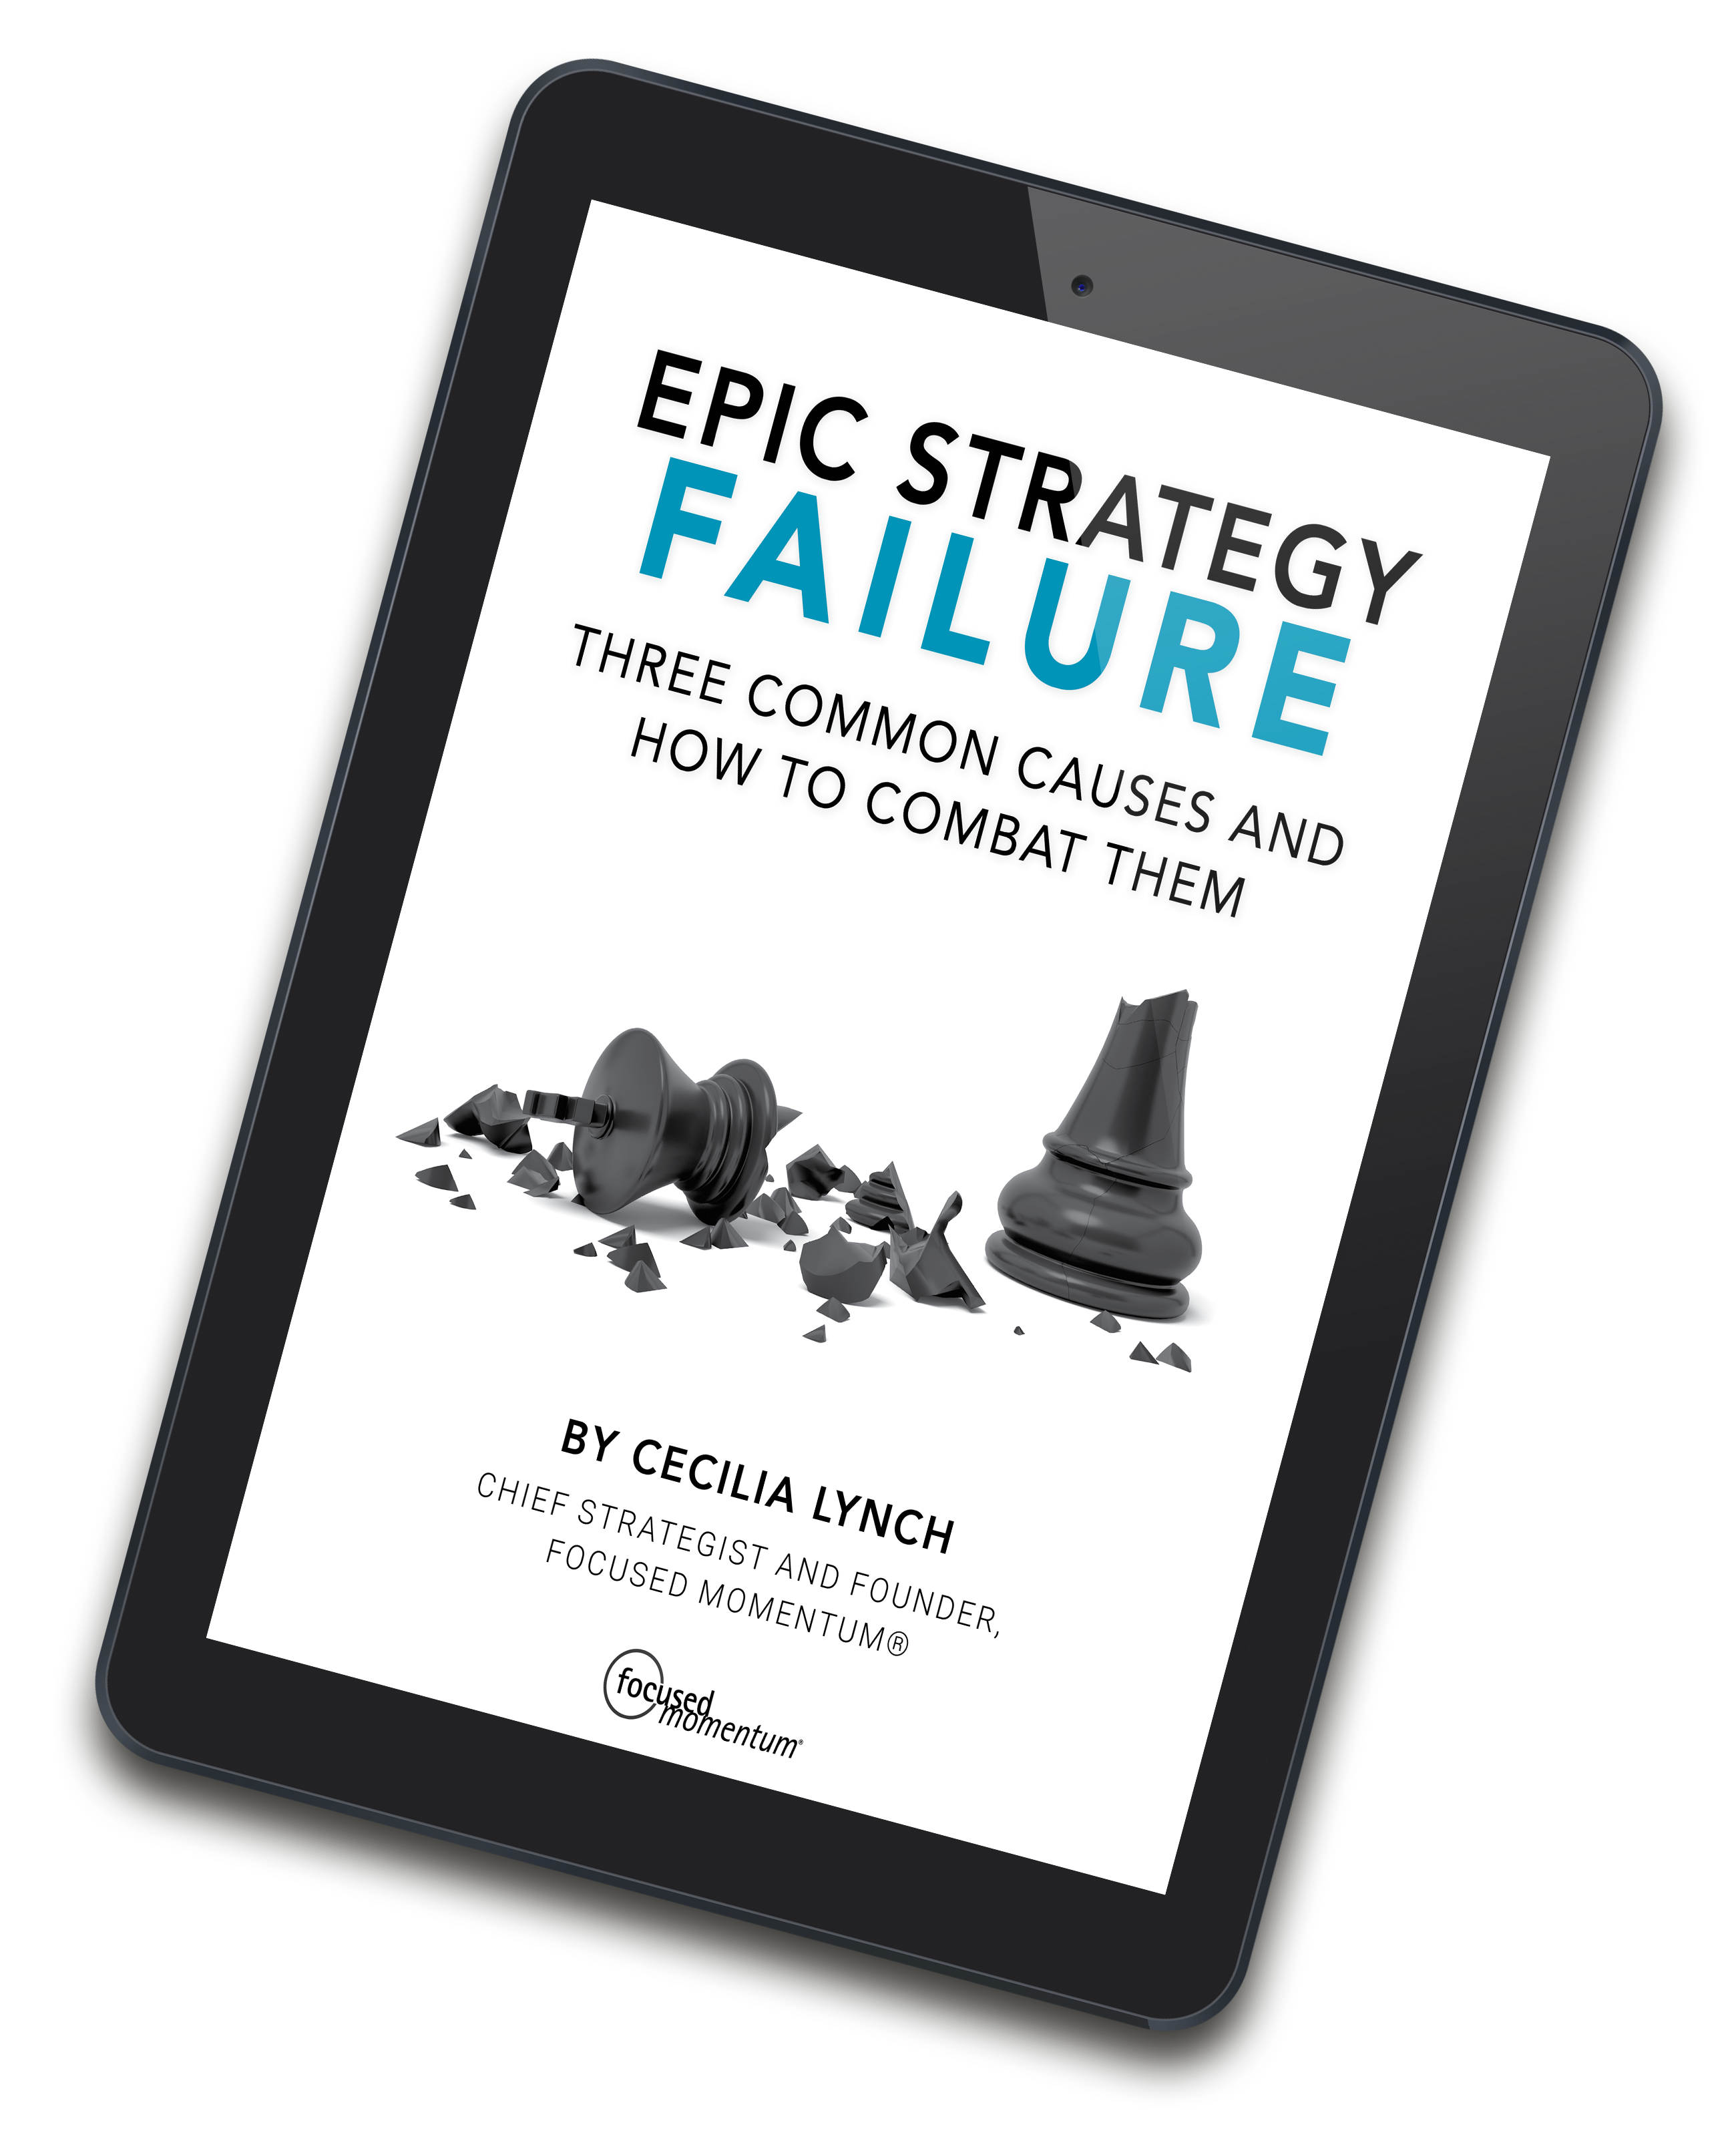 Epic Strategy Failure